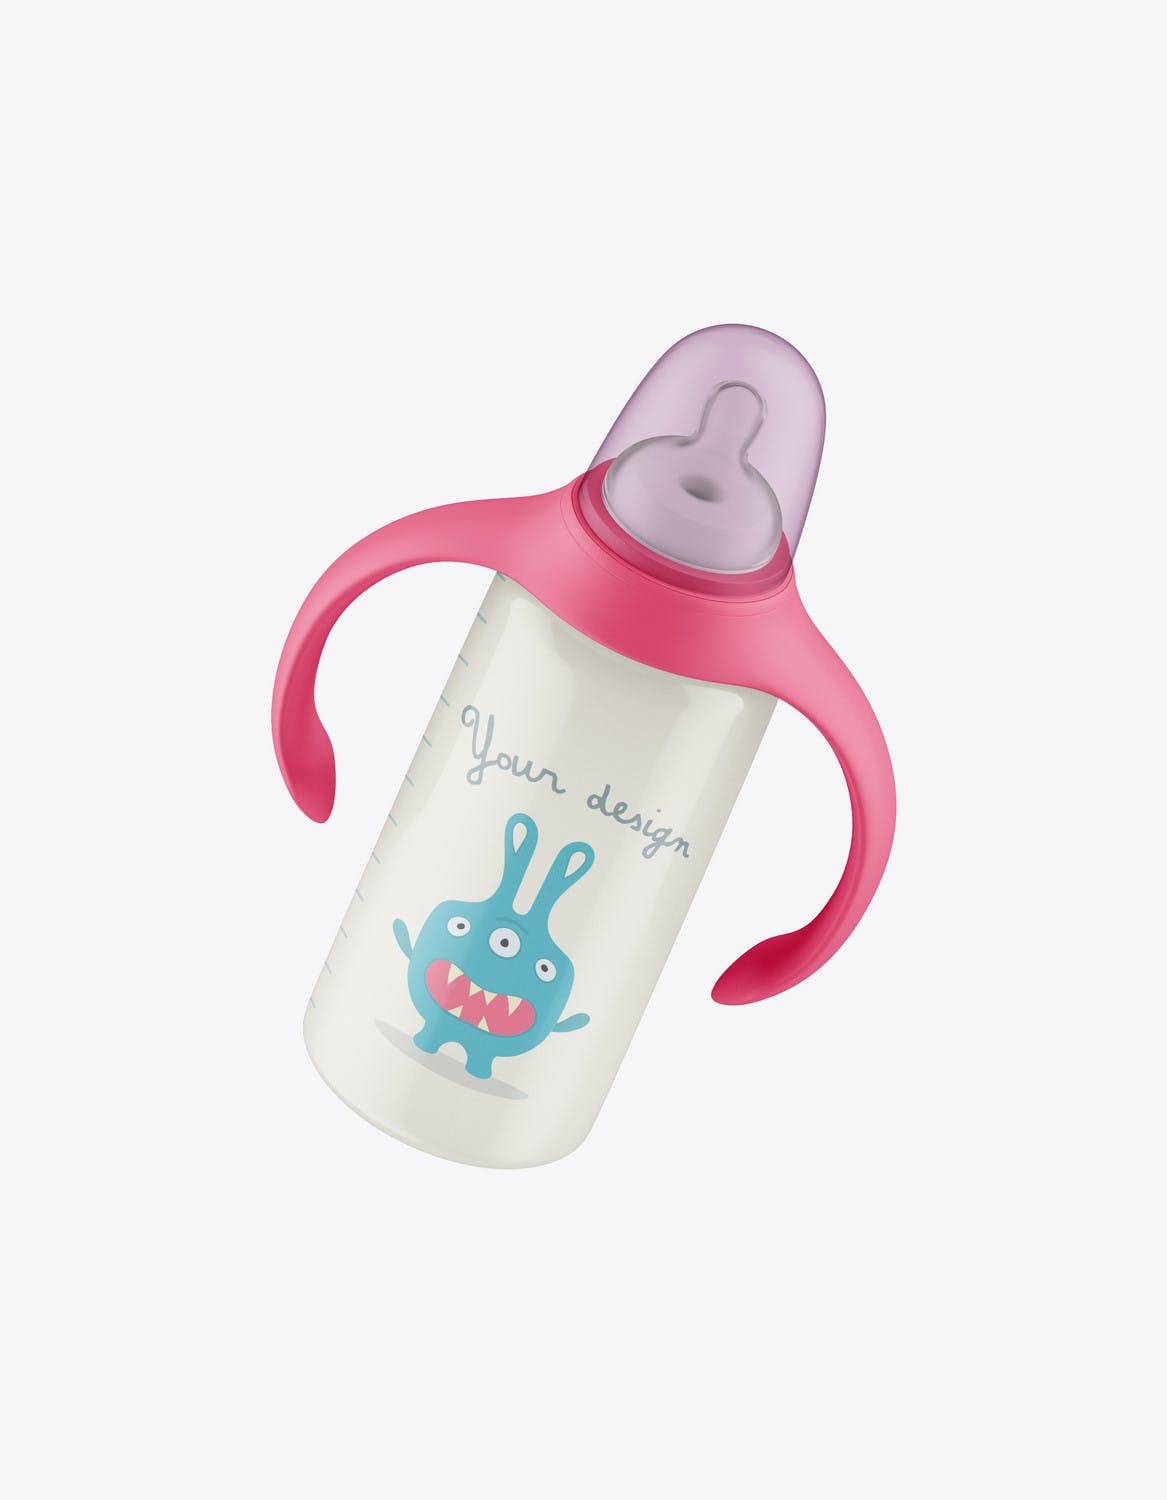 带把手的婴儿奶瓶包装设计样机 Baby Bottle with Handles Mockup 样机素材 第3张